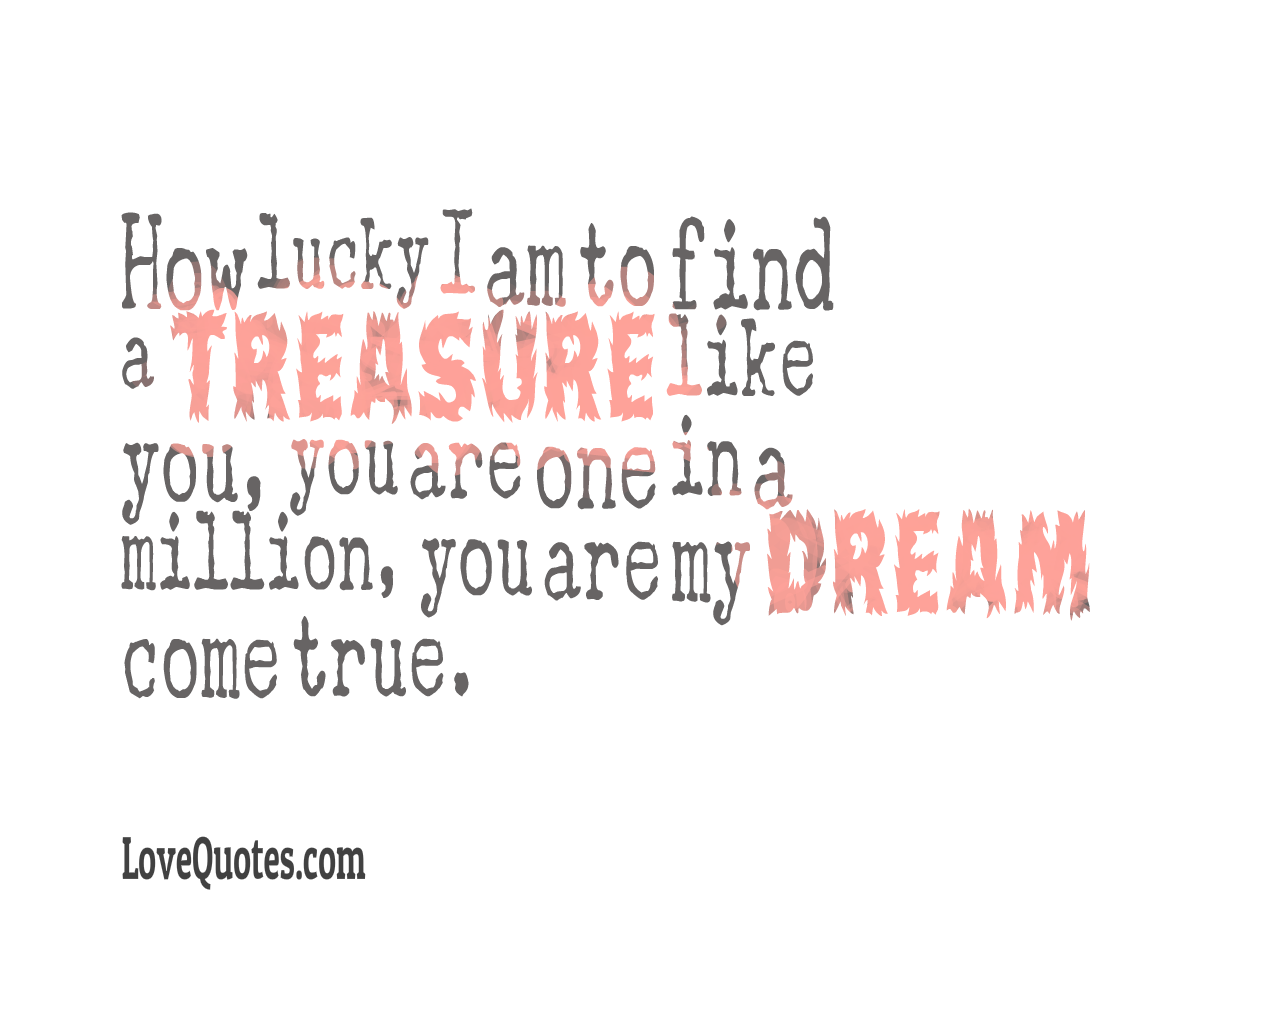 My Dream Come True - Love Quotes